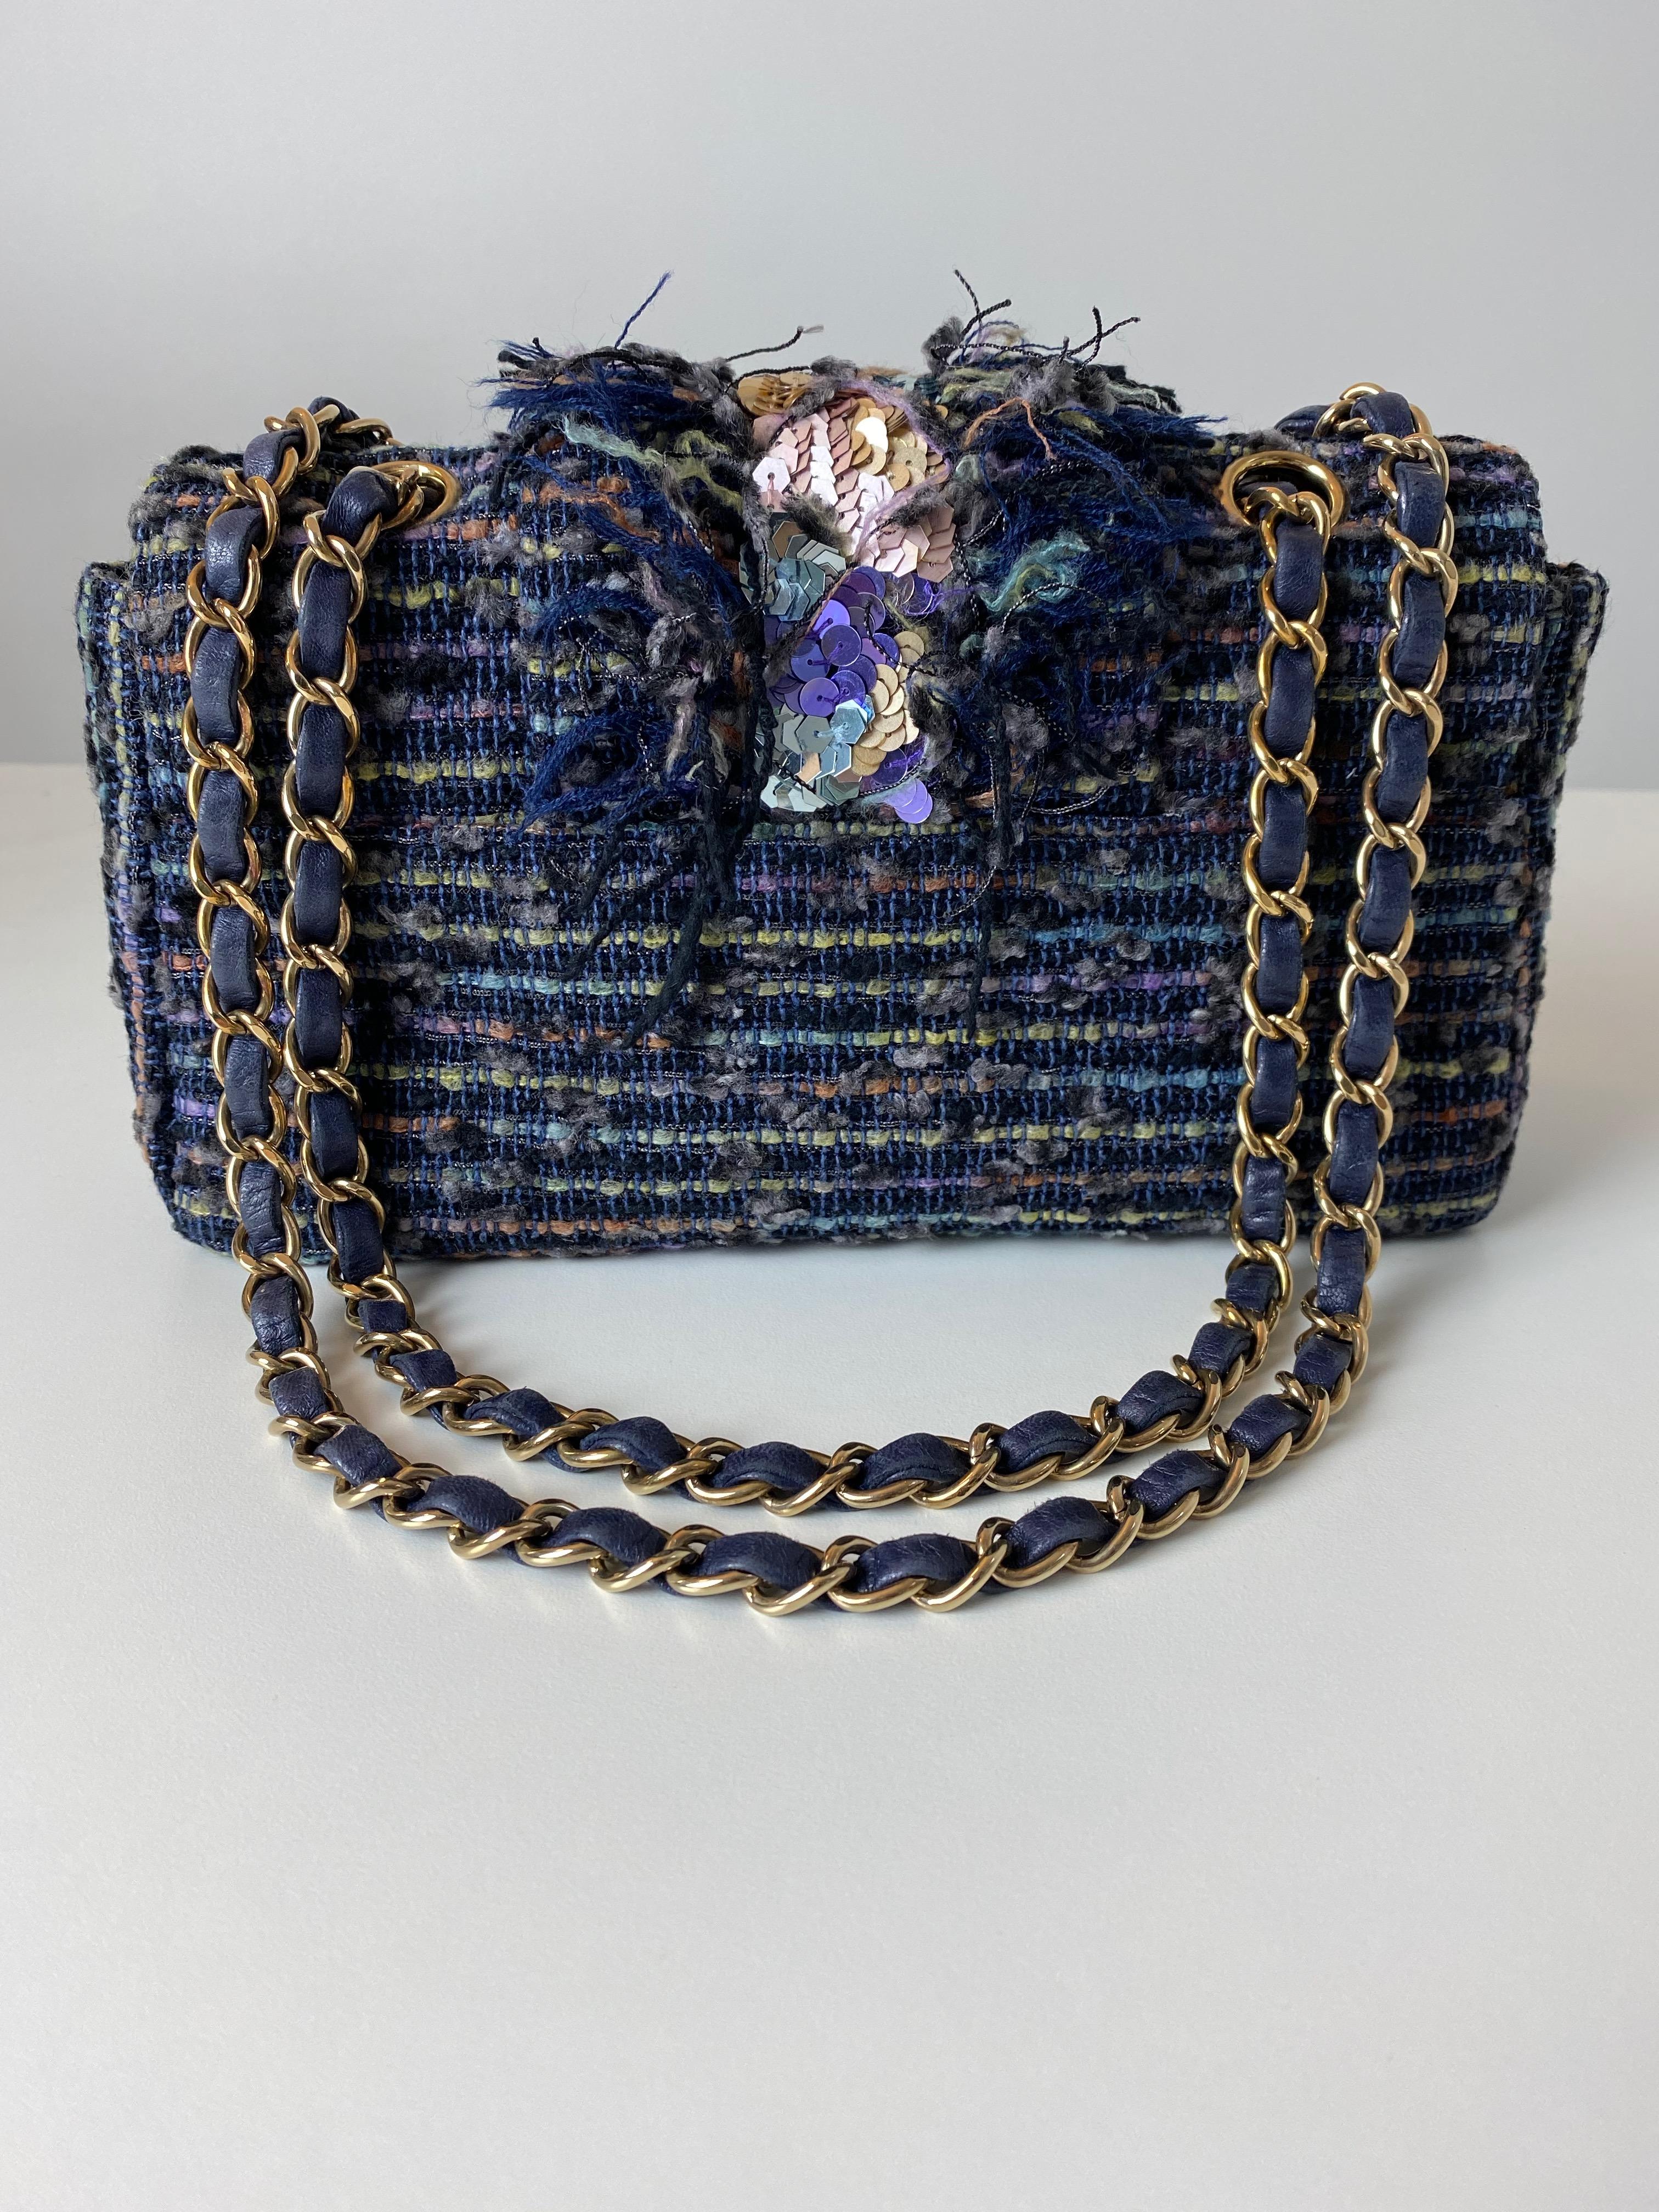 Black Chanel Classic Flap Vintage Jeweled Sequin Mermaid Navy Blue Tweed Shoulder Bag